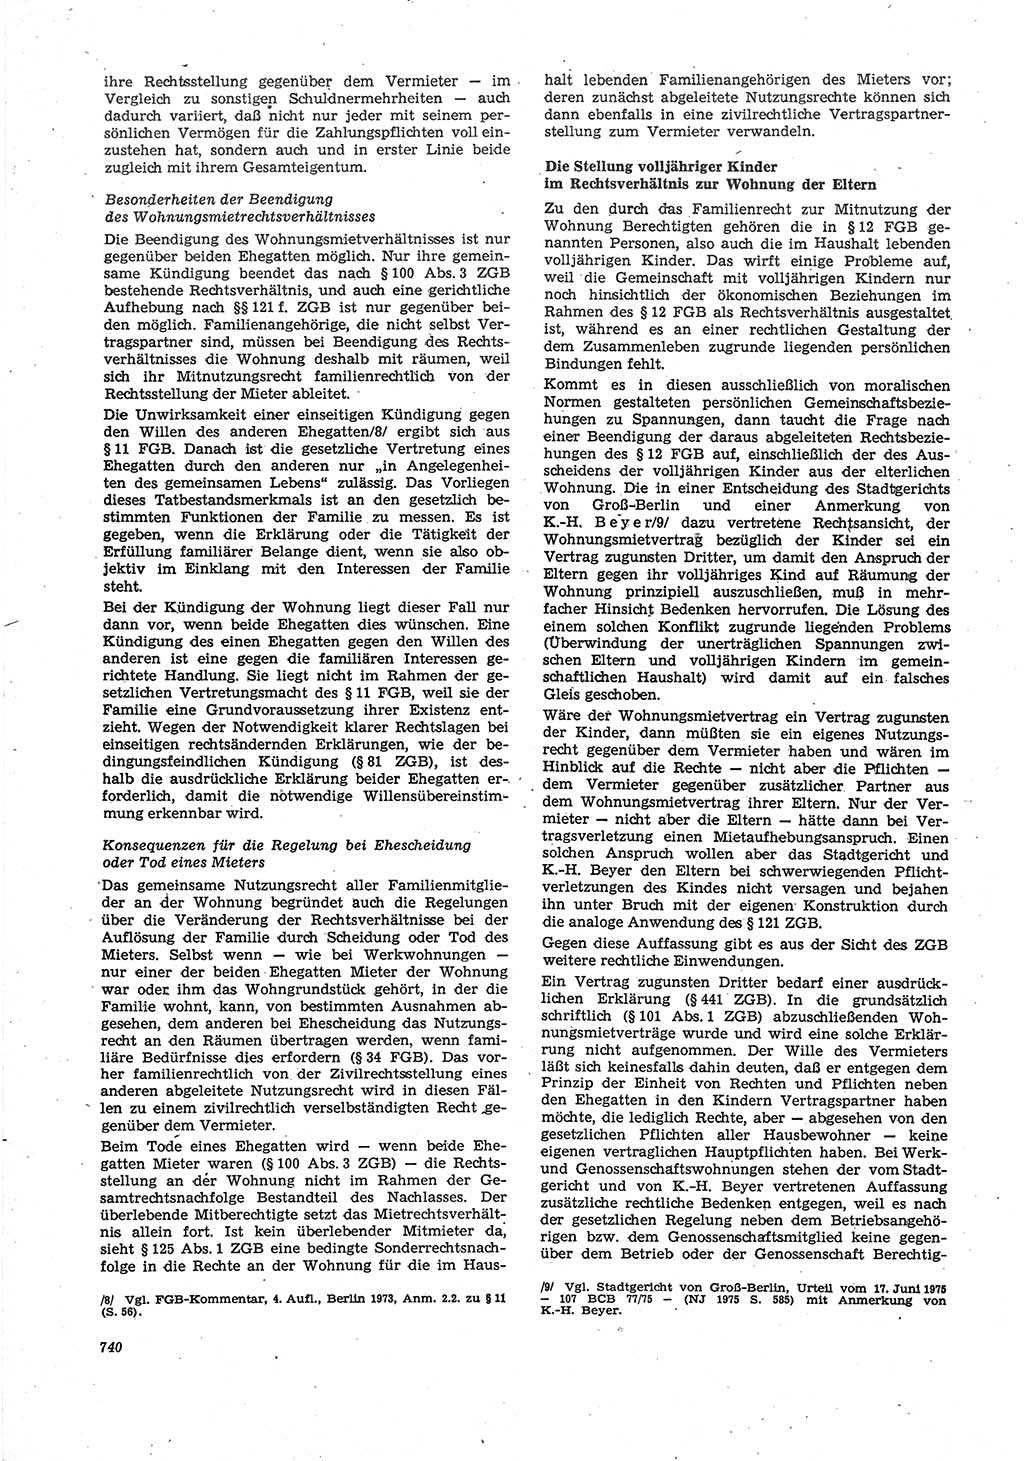 Neue Justiz (NJ), Zeitschrift für Recht und Rechtswissenschaft [Deutsche Demokratische Republik (DDR)], 30. Jahrgang 1976, Seite 740 (NJ DDR 1976, S. 740)